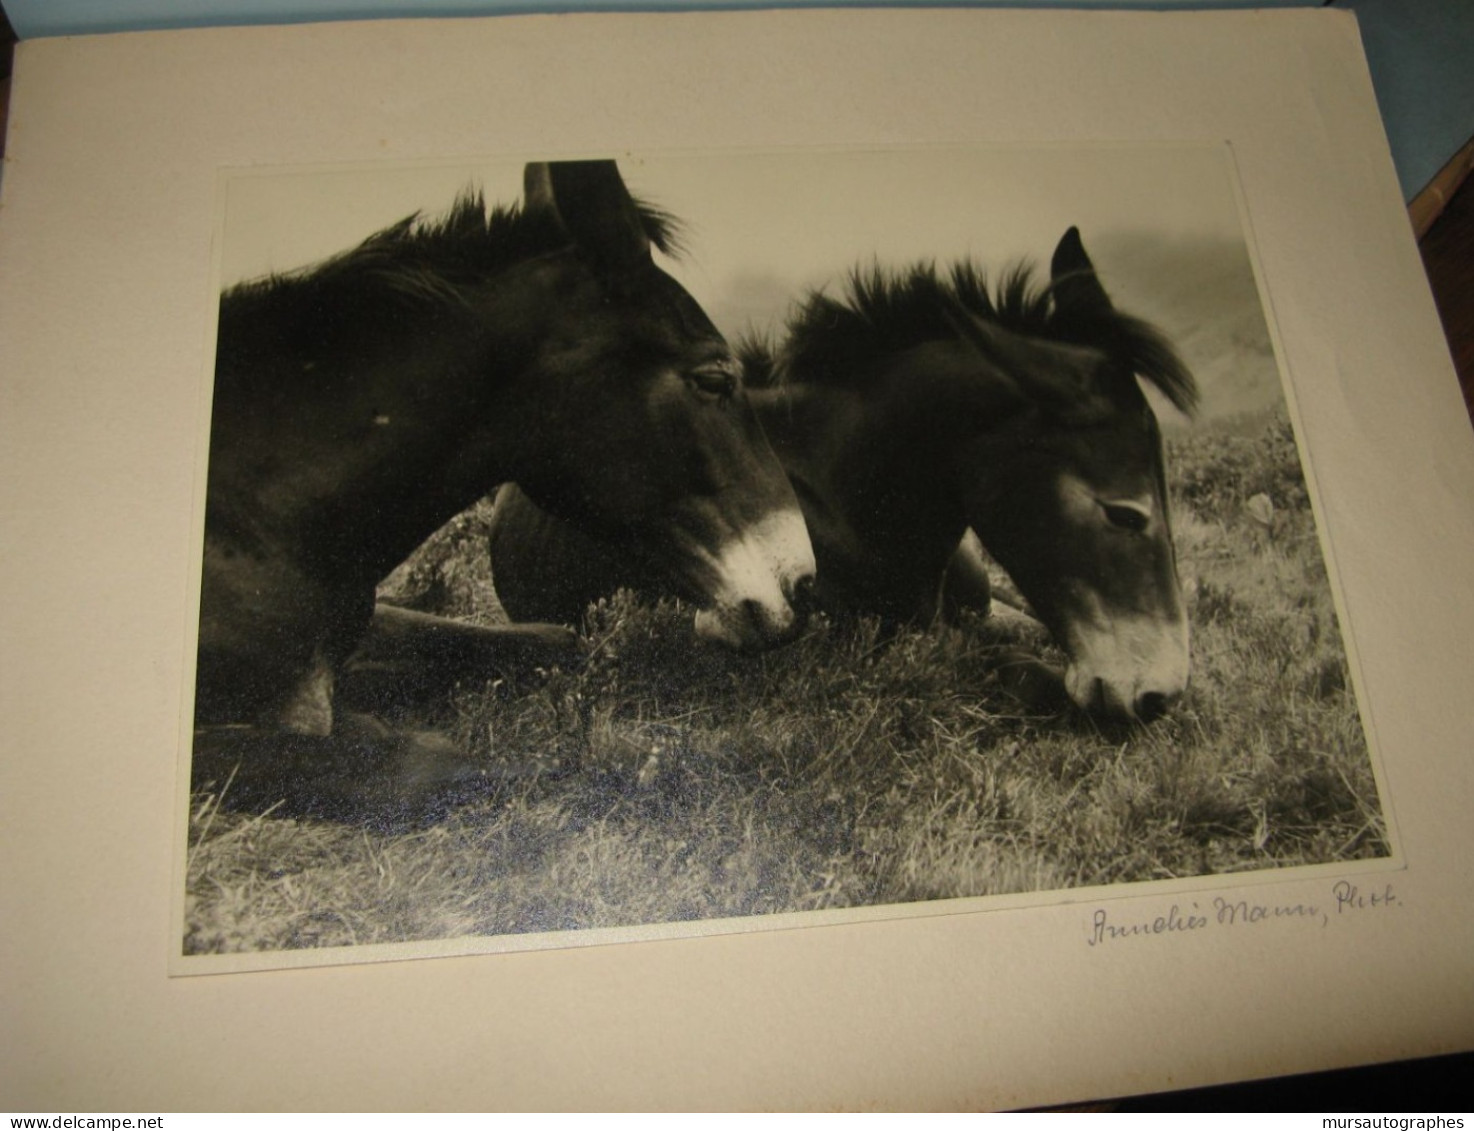 BELLE PHOTOGRAPHIE N&B "DEUX MULETS" Vers 1940-50 Signé ANNELIES MANN - Signed Photographs